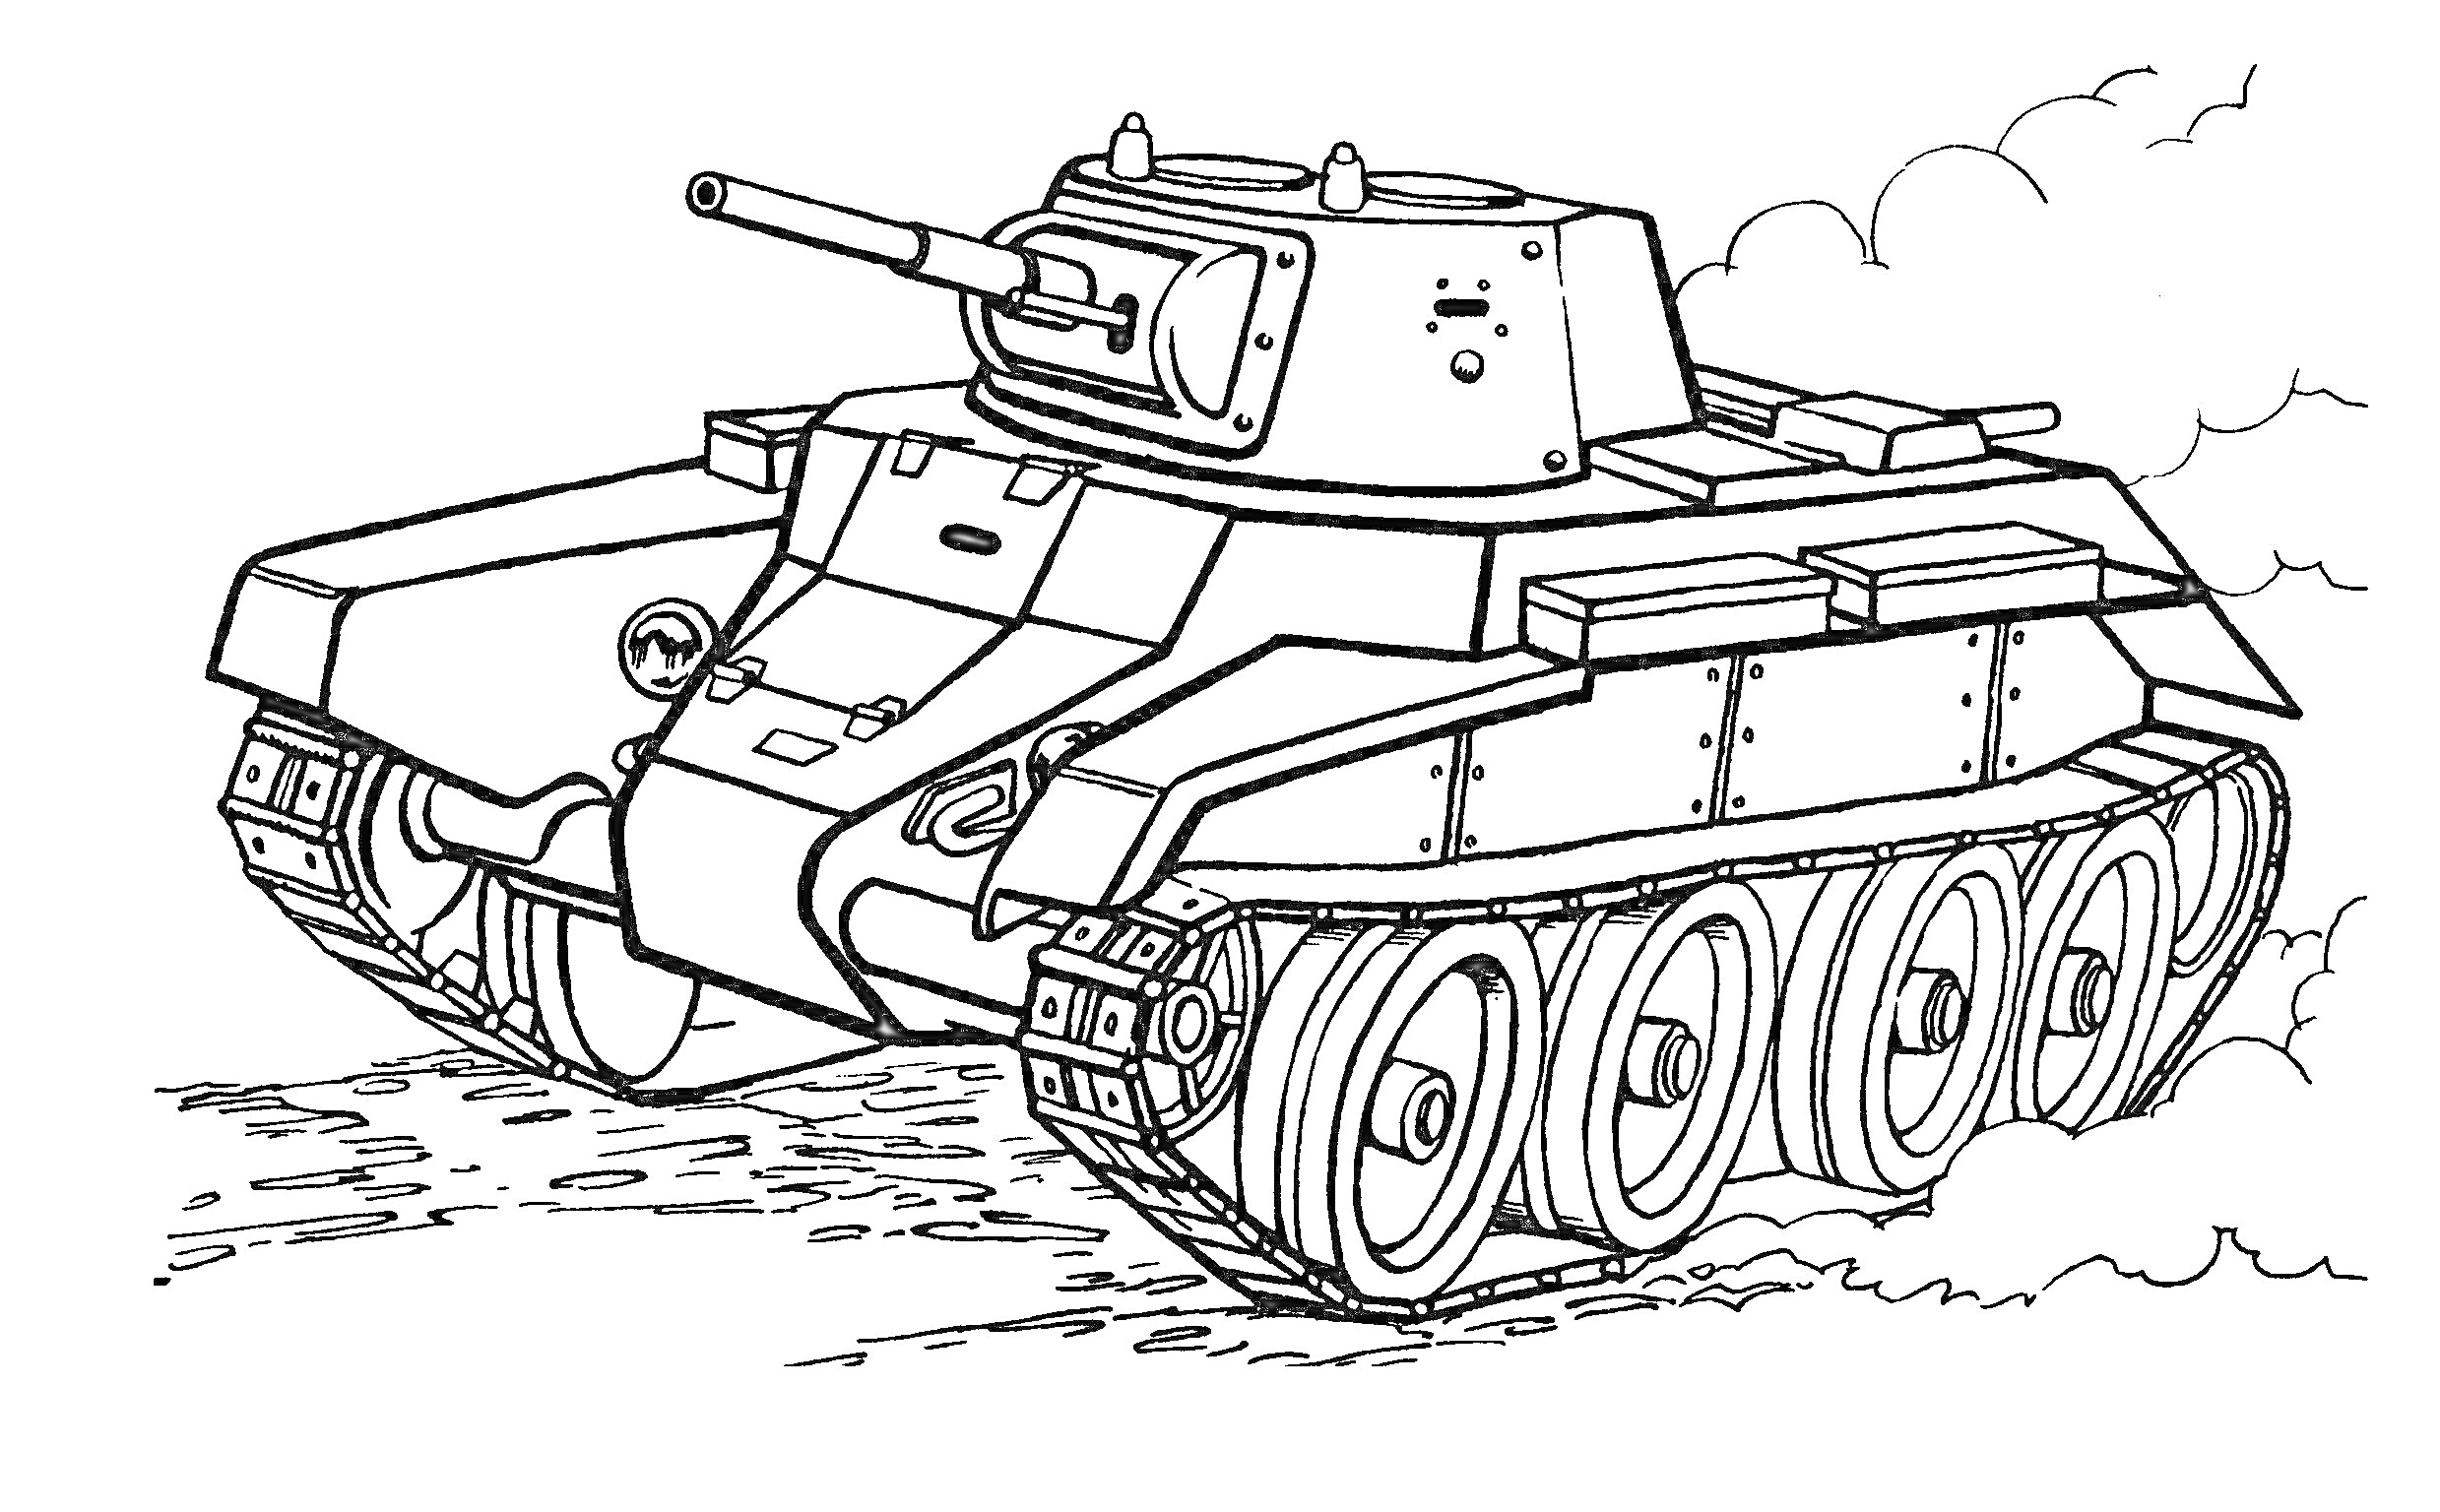 Танковая раскраска с средневековым танком на колесах, пушкой и гусеницами, поднятие дыма сзади